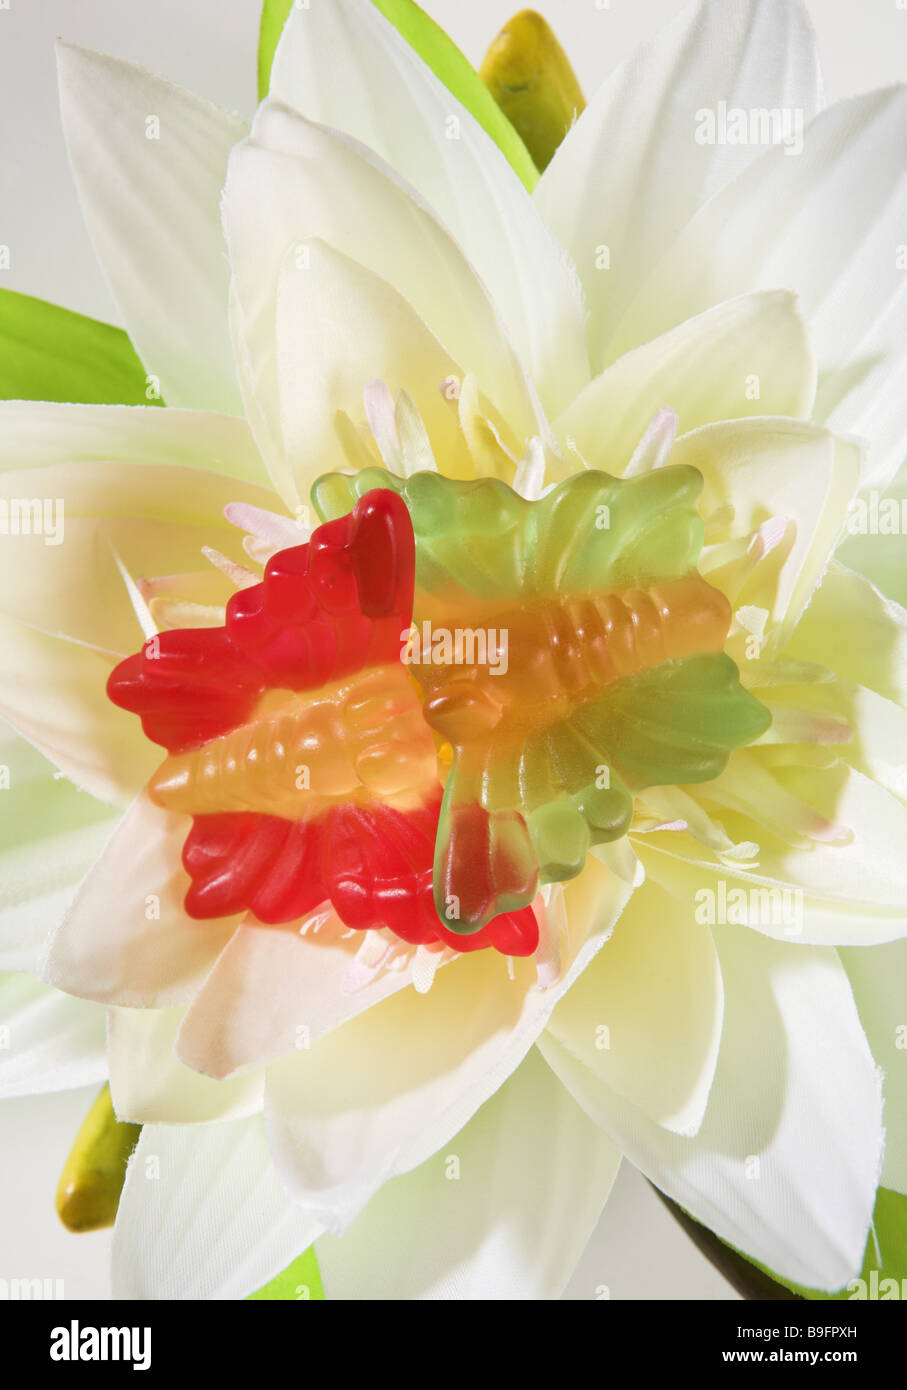 Seide-Blume detail blühenden Obst-Kautschuk-Schmetterlinge-Draufsicht Stockfoto